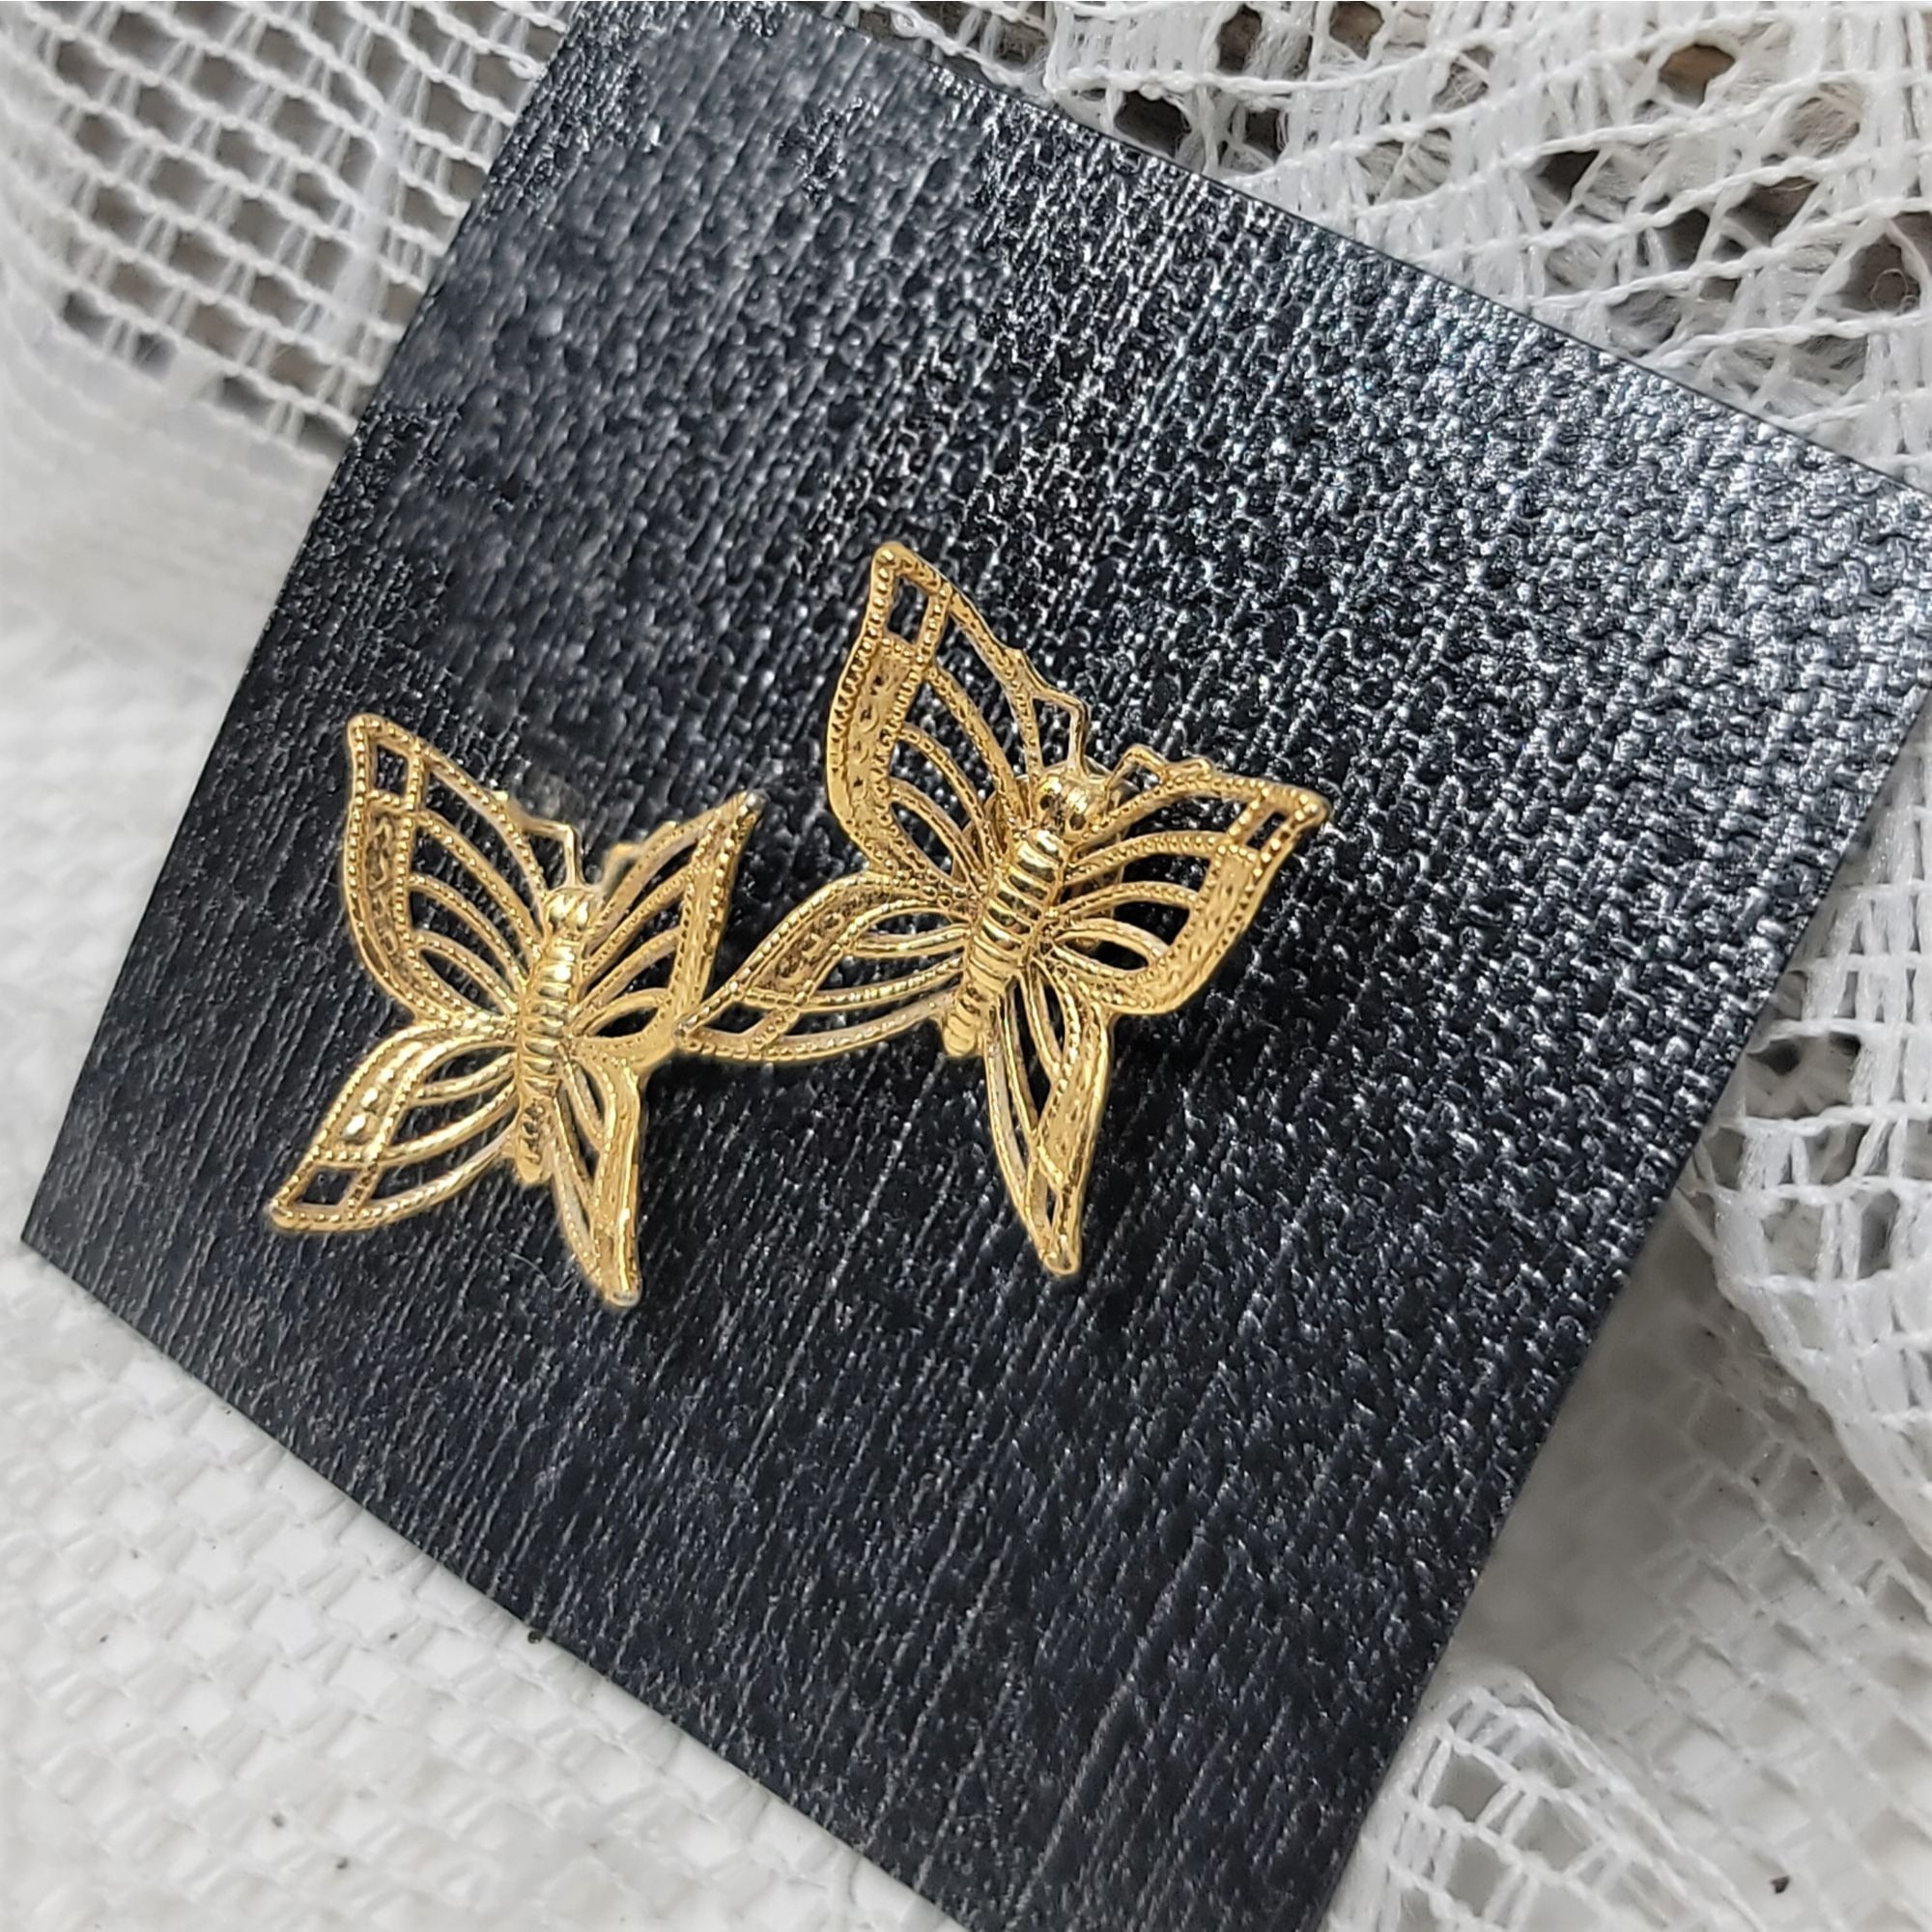 Golden Butterfly Pierced Earrings Delicate Cut Out Wings